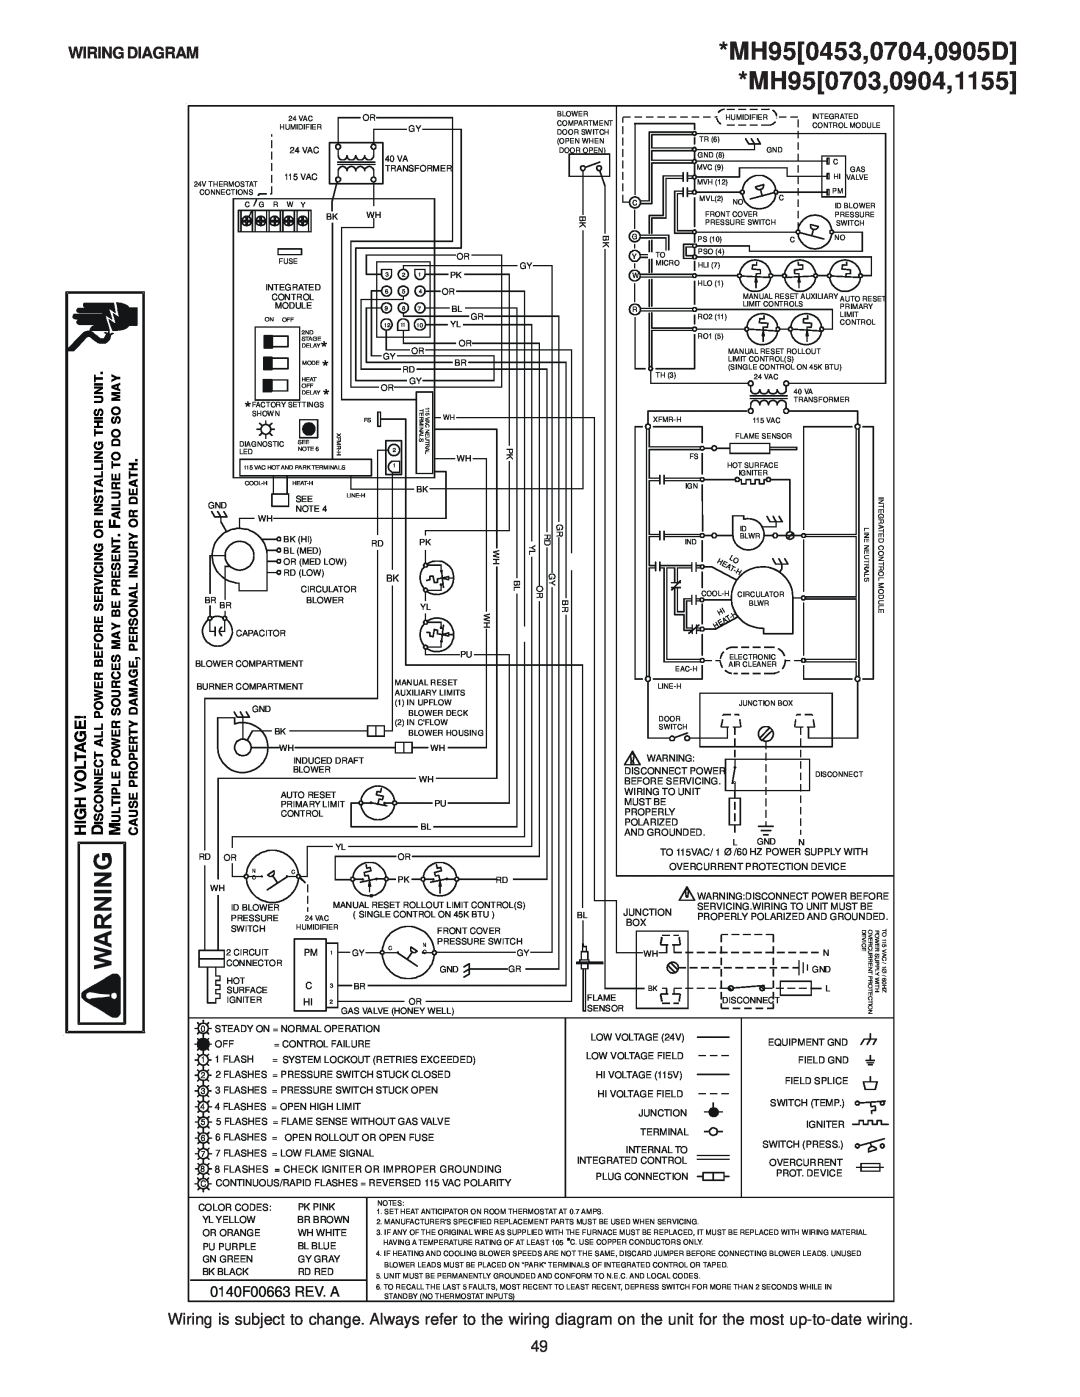 Goodman Mfg GAS-FIRED WARM AIR FURNACE MH950453,0704,0905D MH950703,0904,1155, Wiring Diagram, 0140F00663 REV. A 